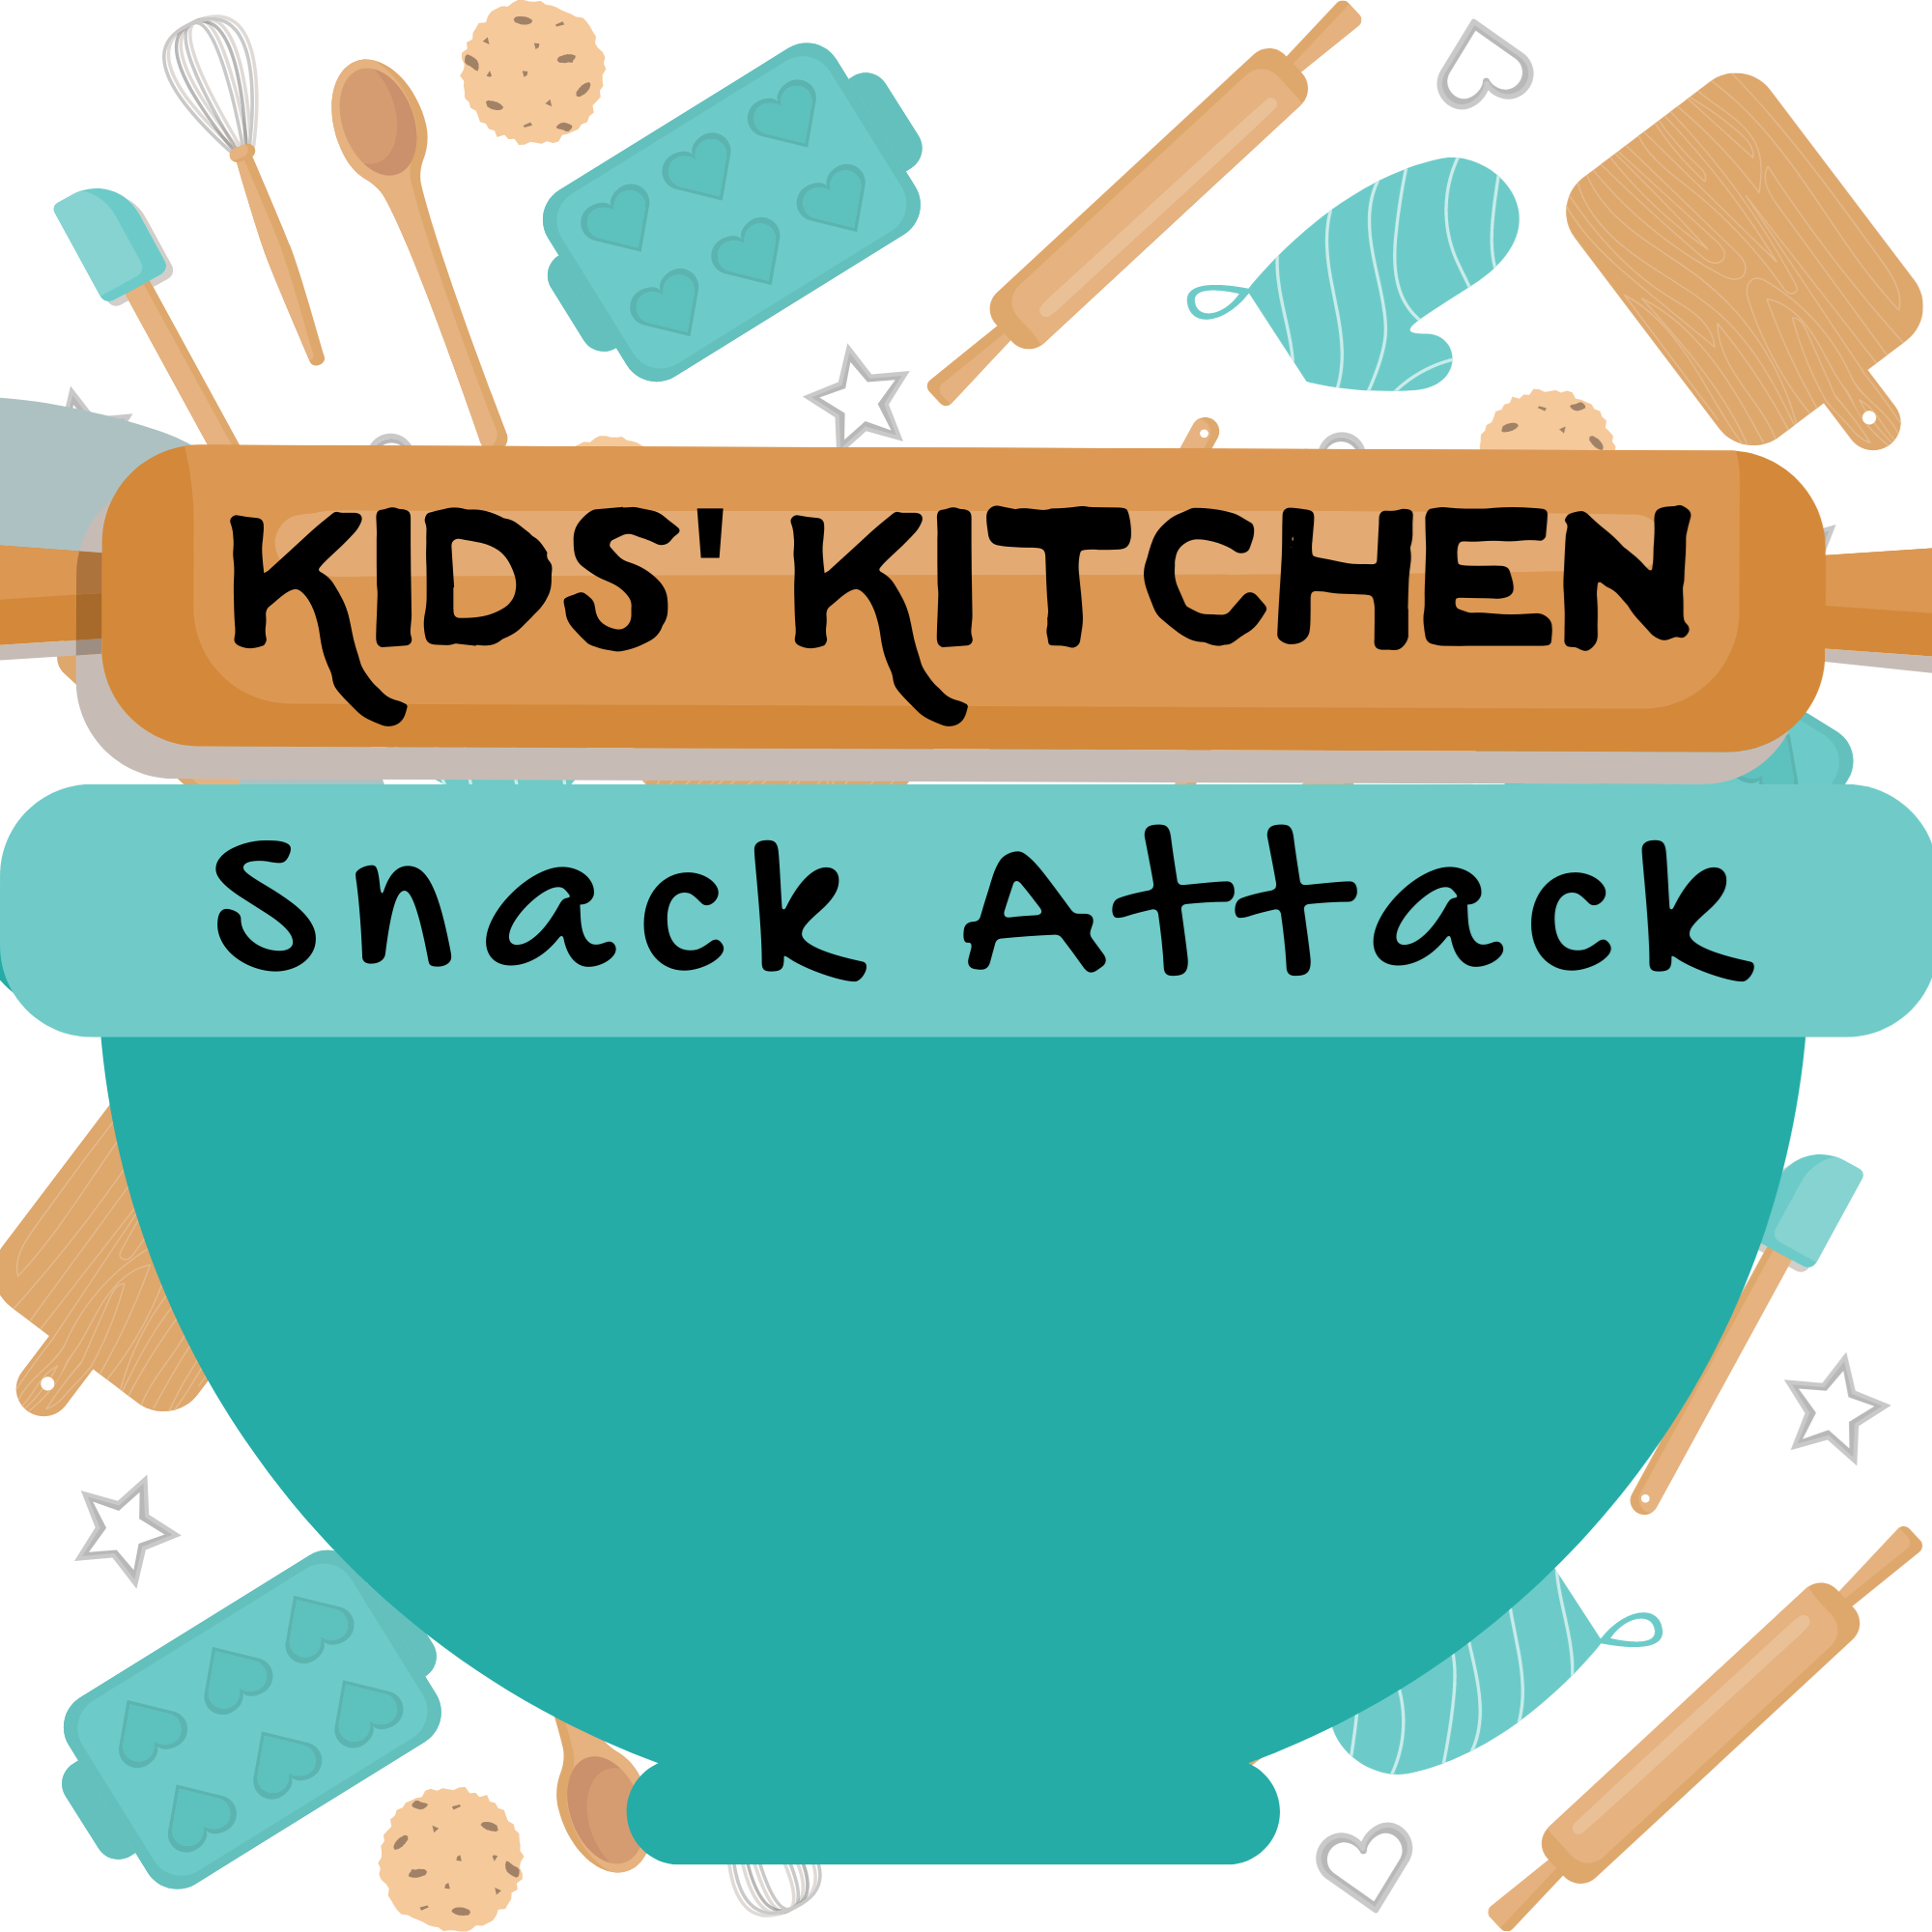 Kids' Kitchen - Snack Attack!